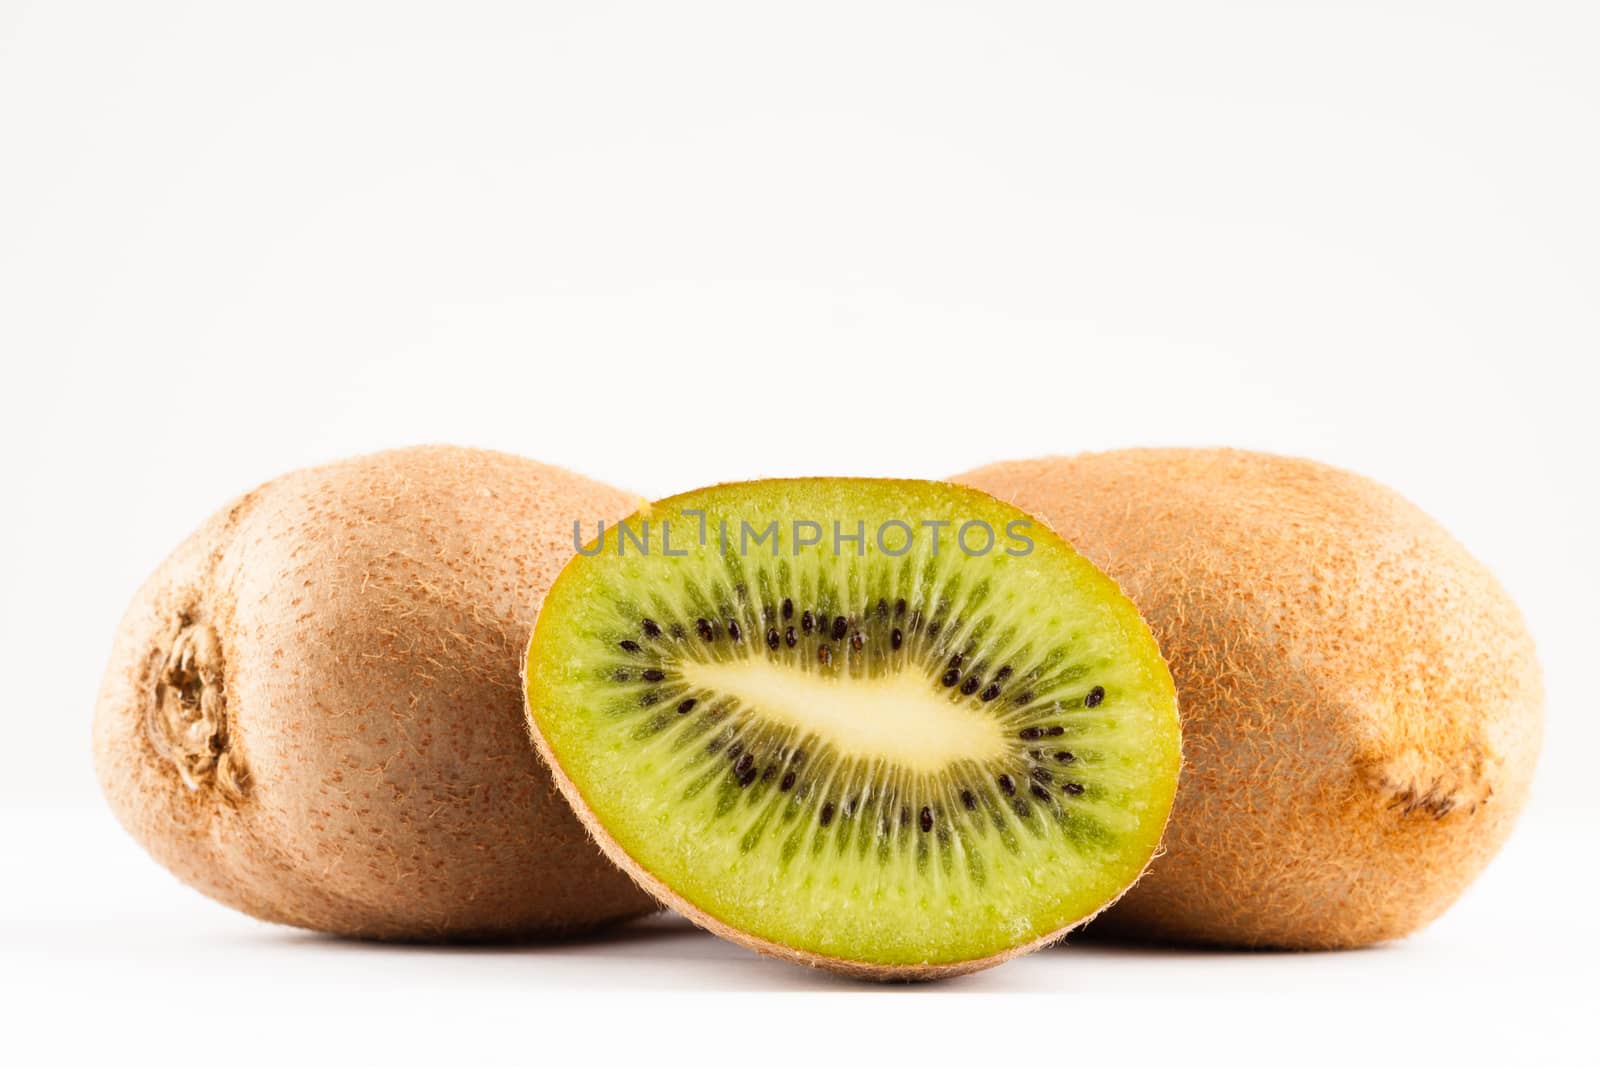 kiwi fruits whole and sliced on white background